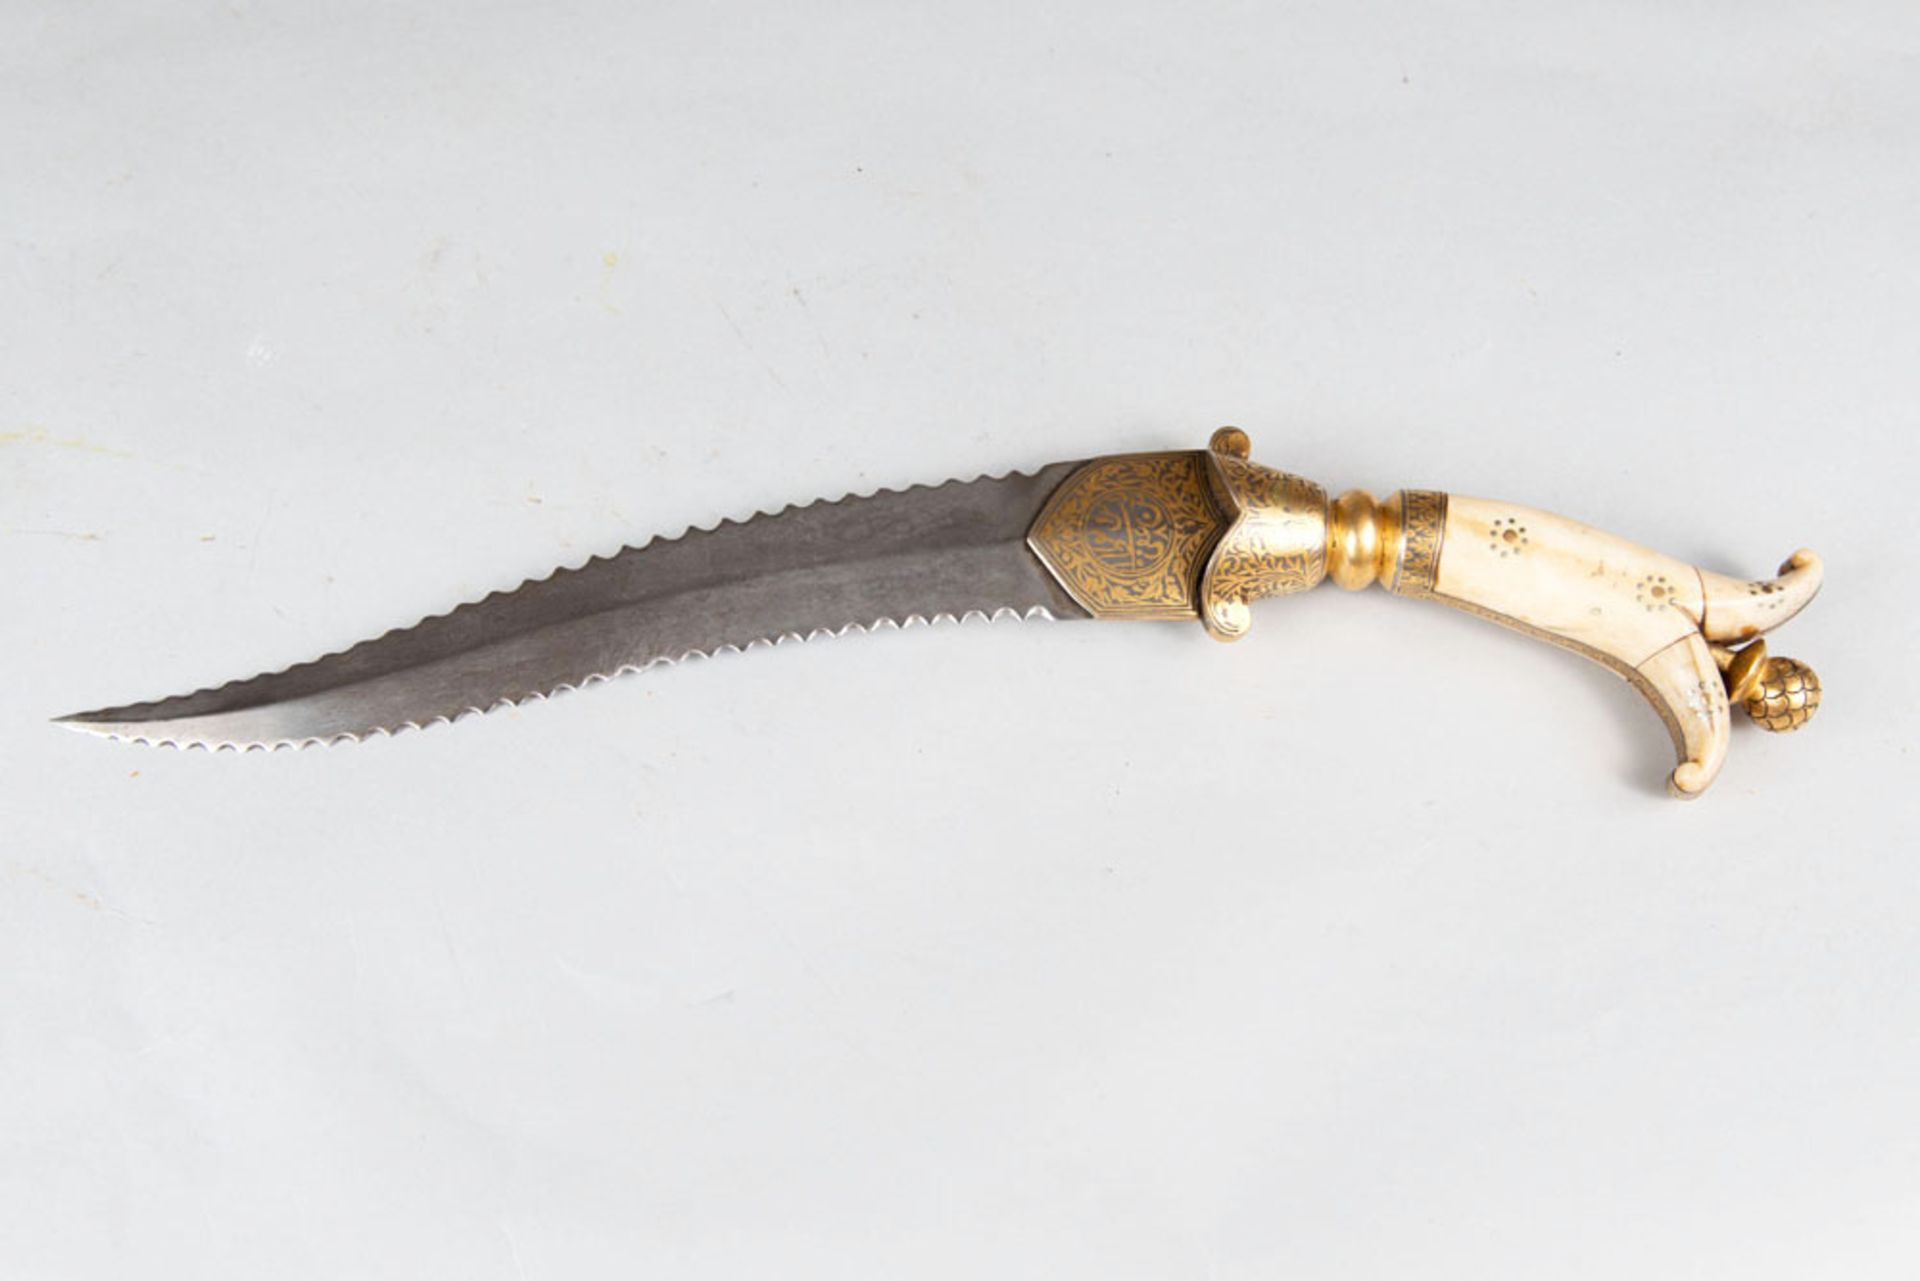 Persian dagger